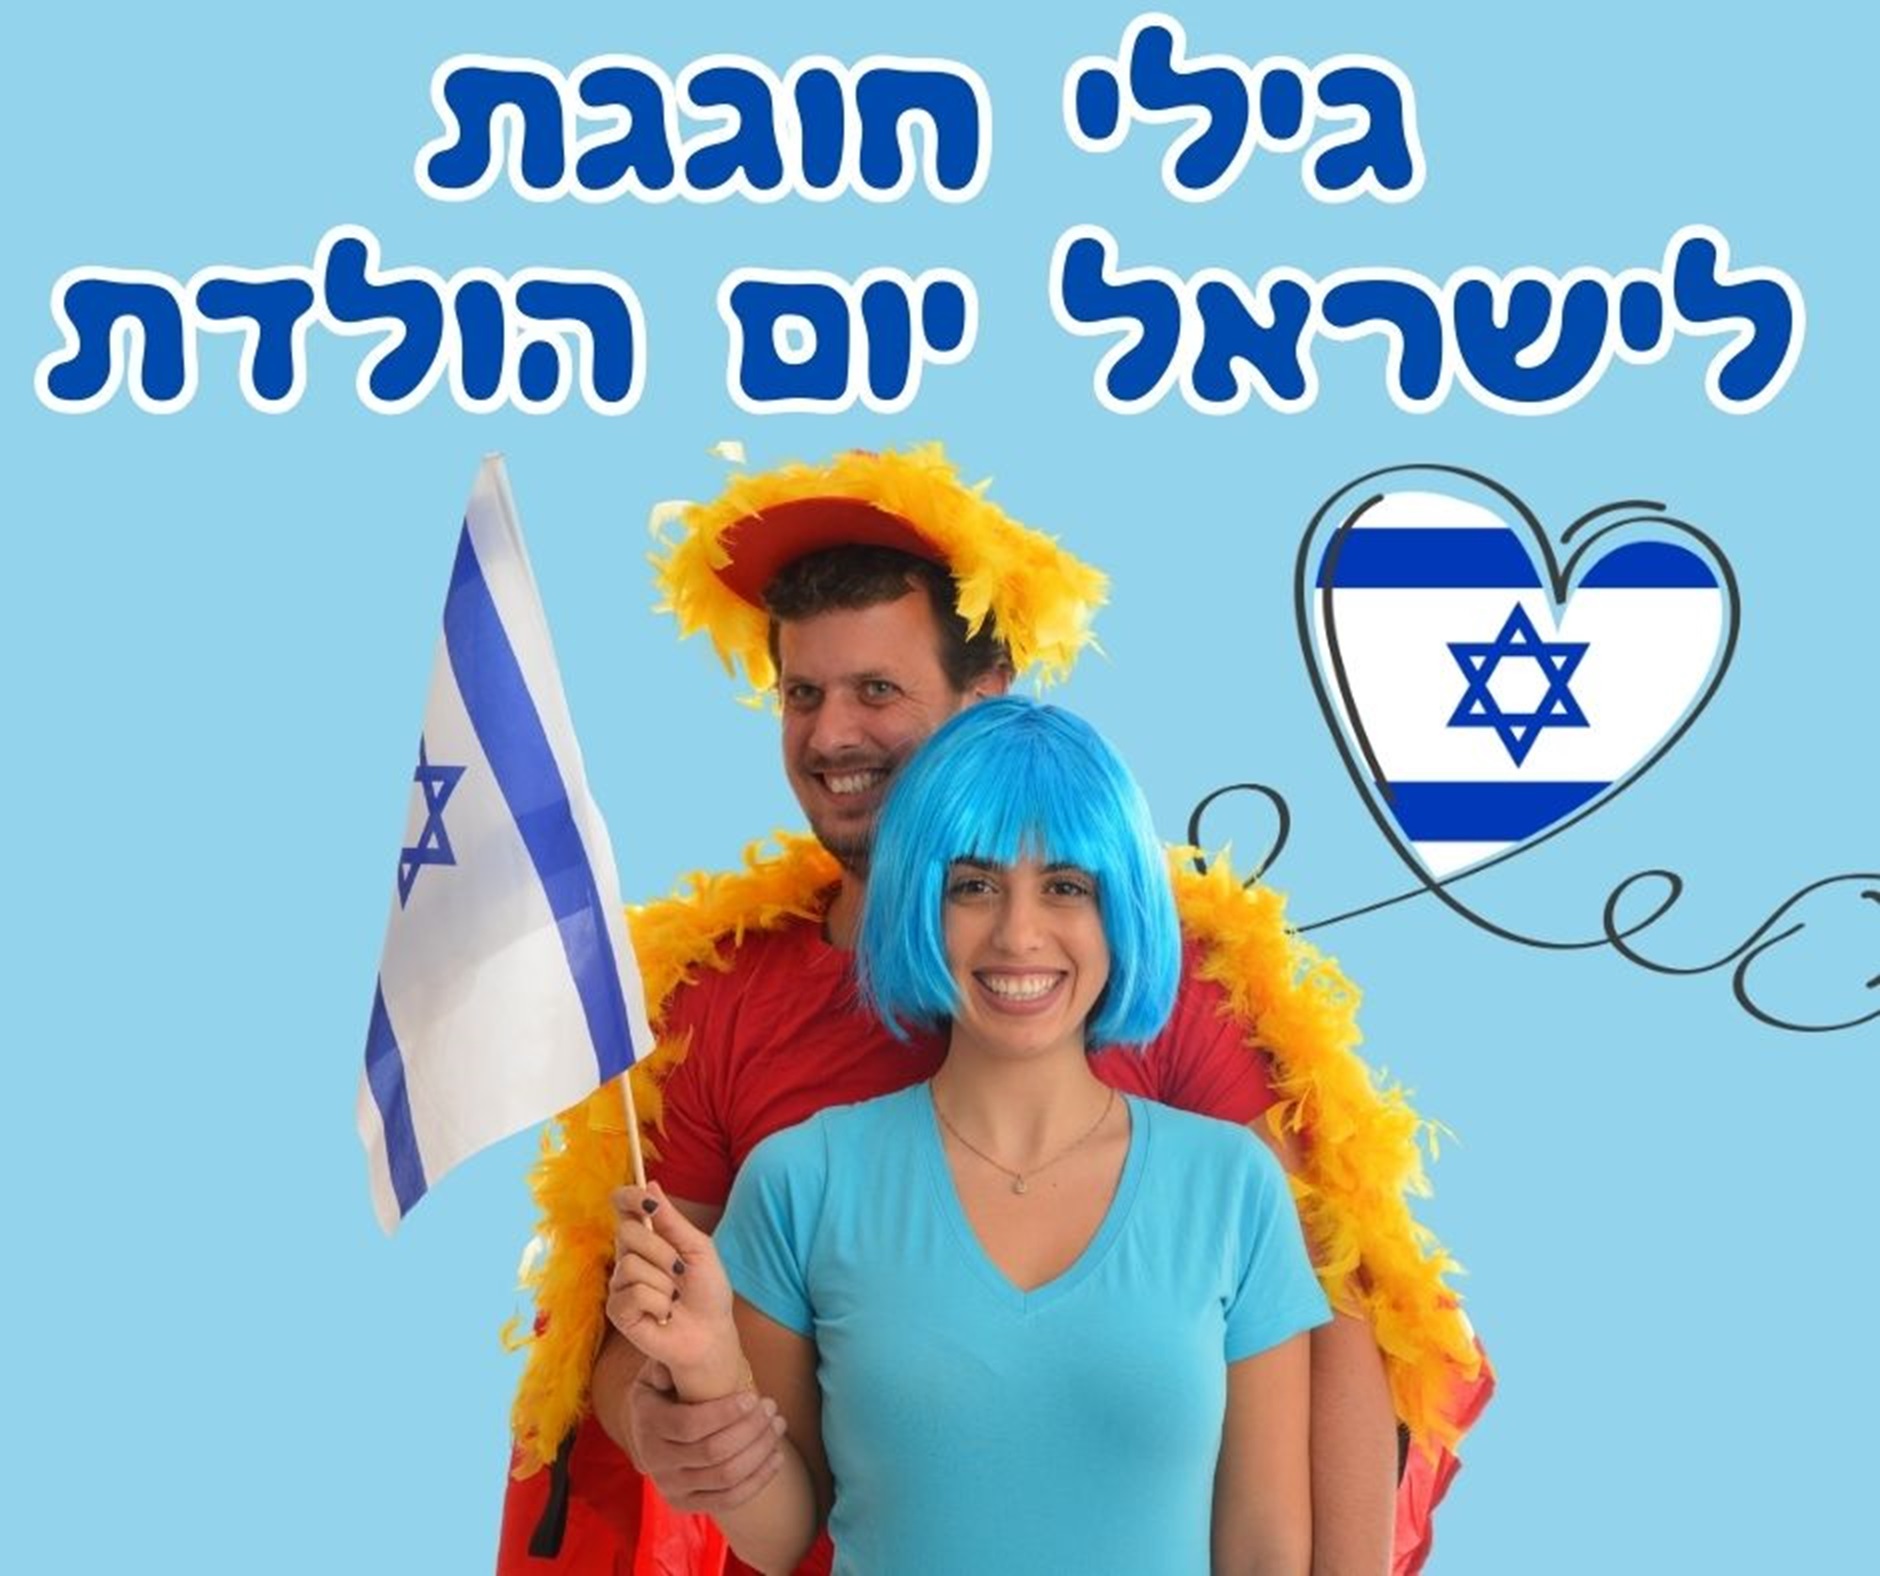 אביב כחול לבן בעופר קניותר: מגוון הופעות, הצגות, ופעילויות לכל המשפחה לרגל יום העצמאות ה 76 למדינה ישראל